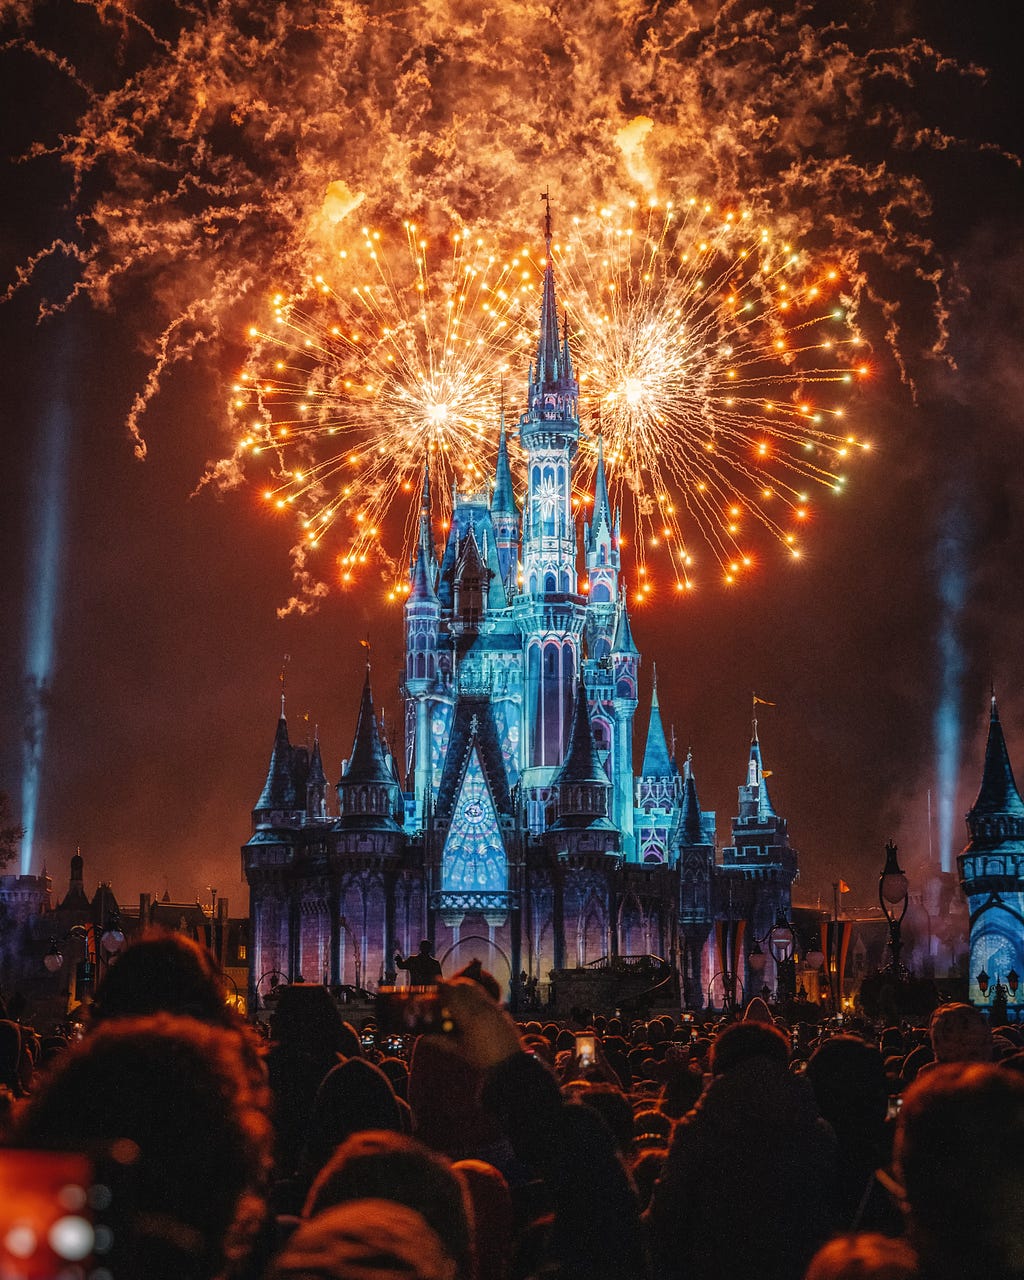 Fireworks over a castle at Disney